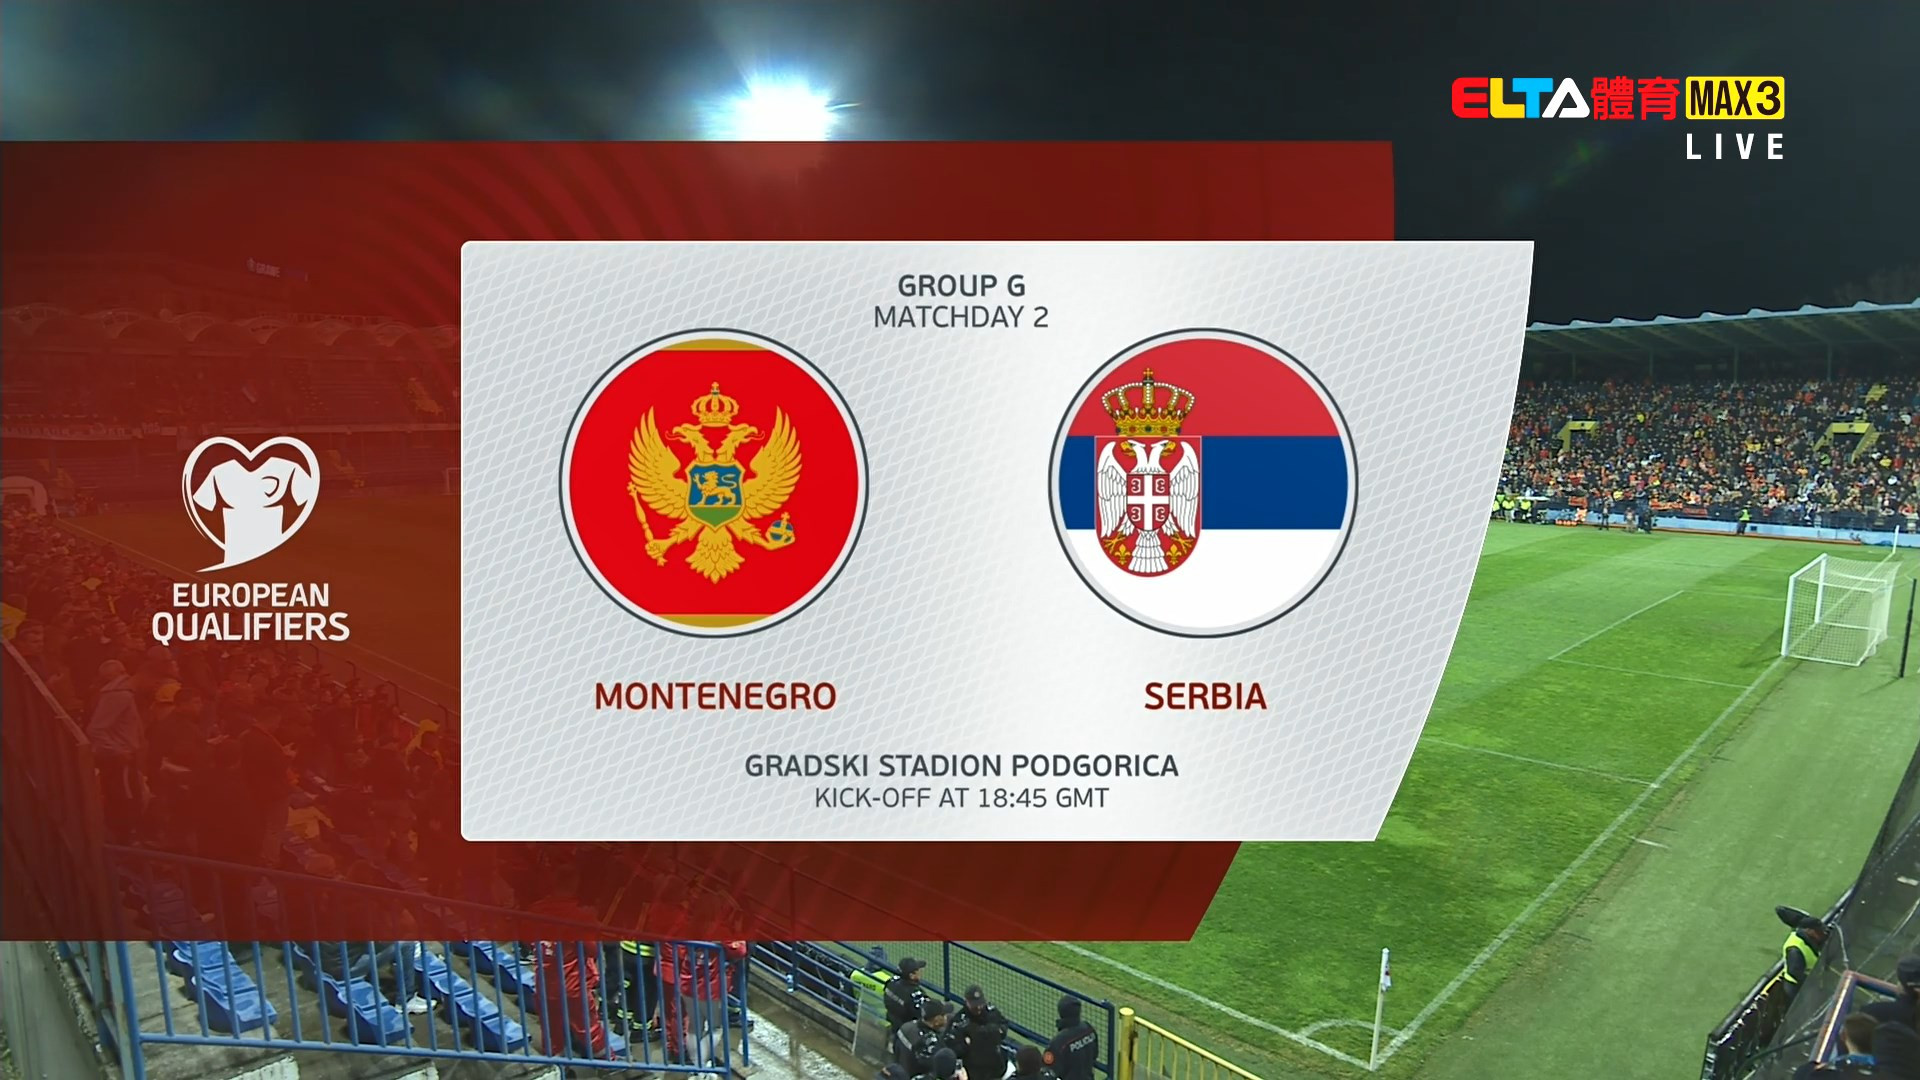 03/28 蒙特內哥羅 VS 塞爾維亞 G組 第二比賽日(原音)